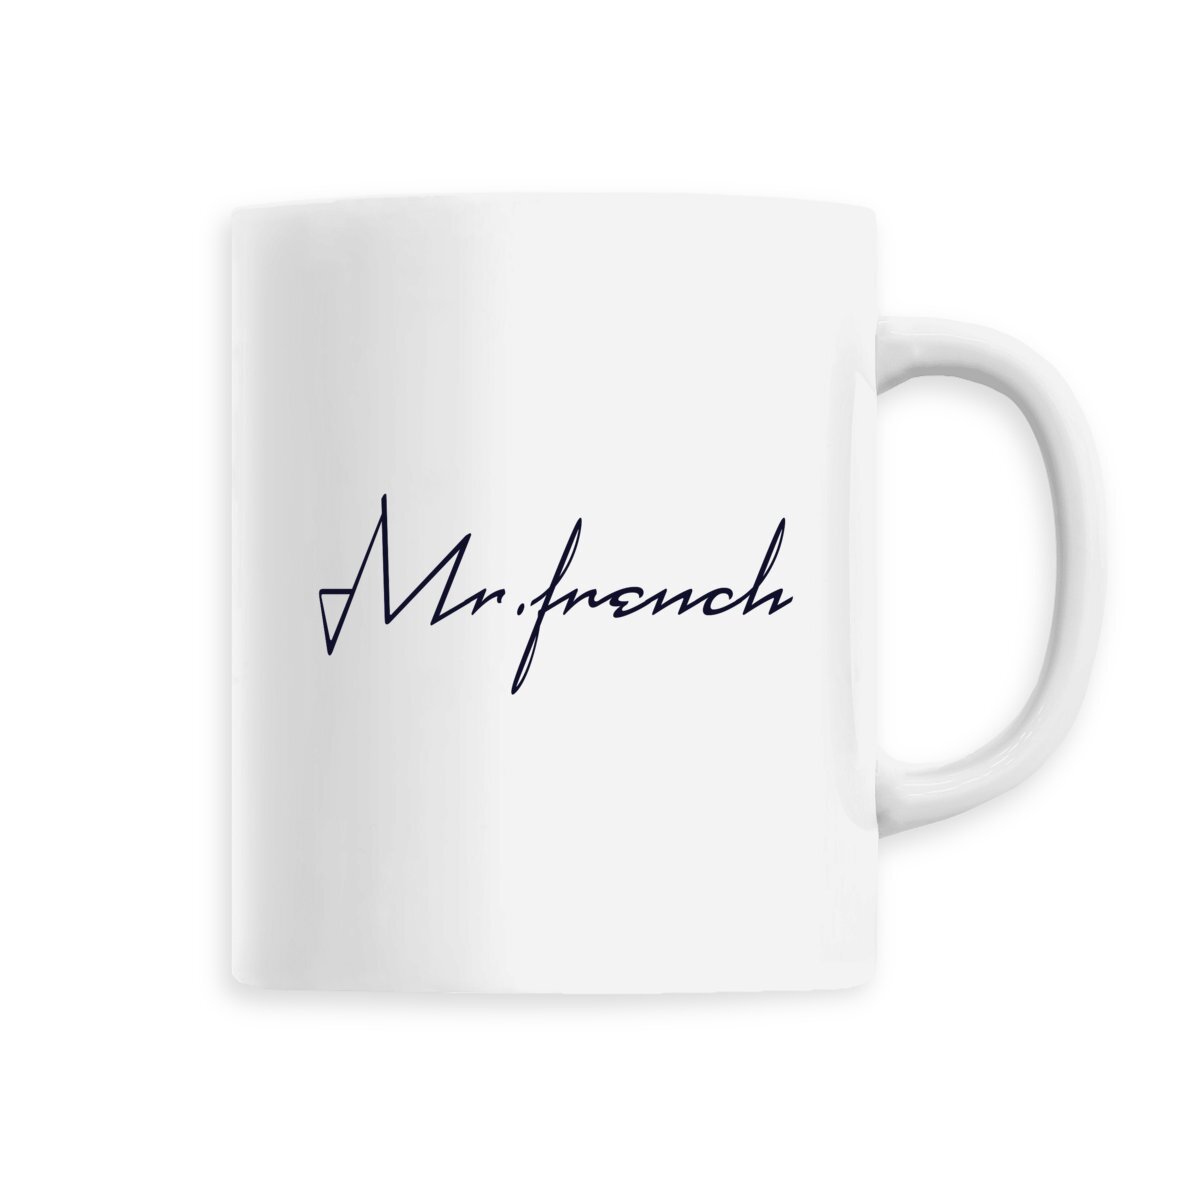 Mug Céramique - Mr French, mug Mr French en céramique de T-French, mug céramique avec impression, mug idée cadeau fête des pères, mug french touch, mug homme Mr French, mug french, mug cadeau, mug blanc